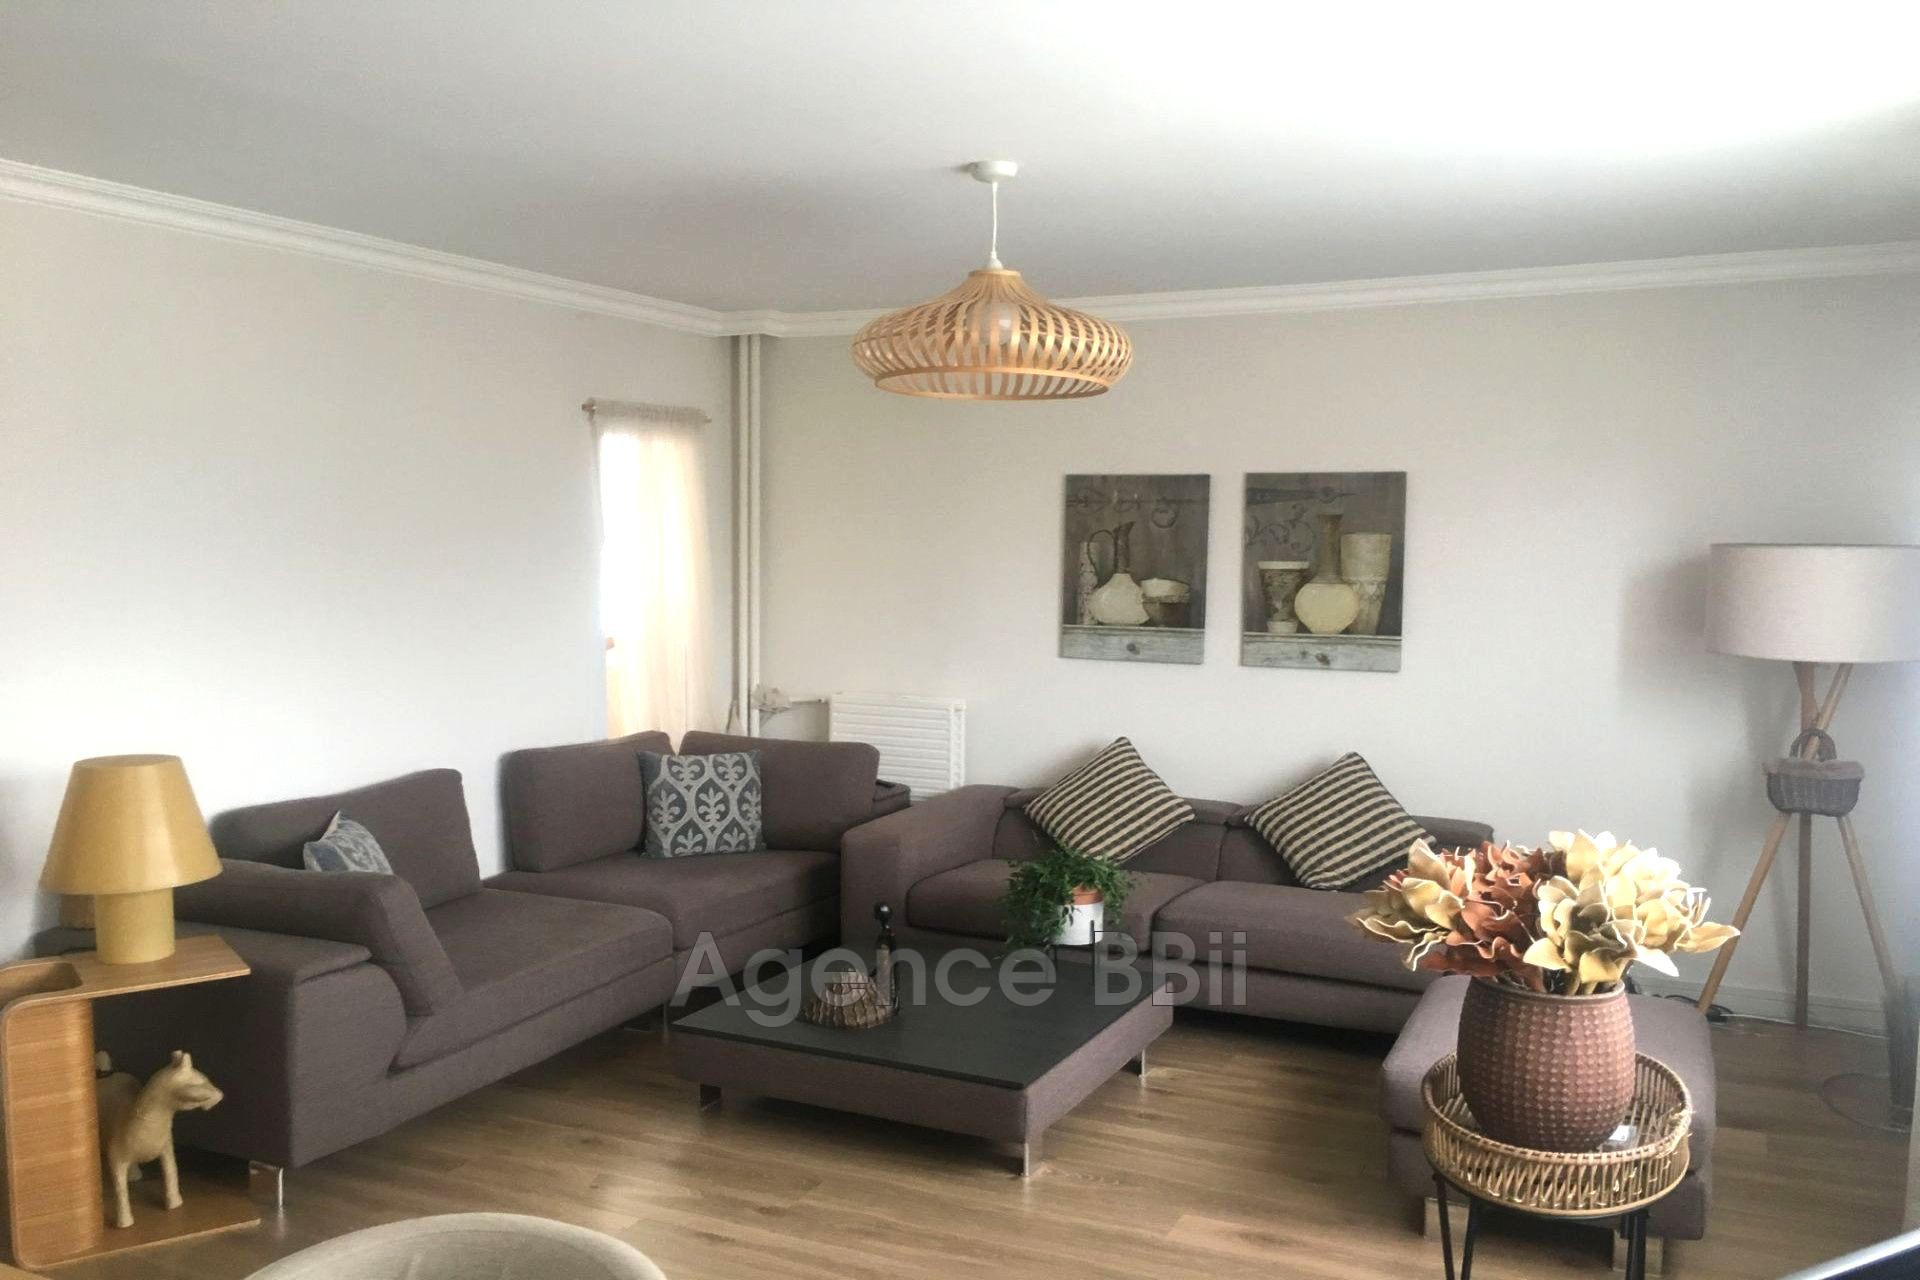 Vente Appartement 90m² 5 Pièces à Montigny-lès-Cormeilles (95370) - BBII